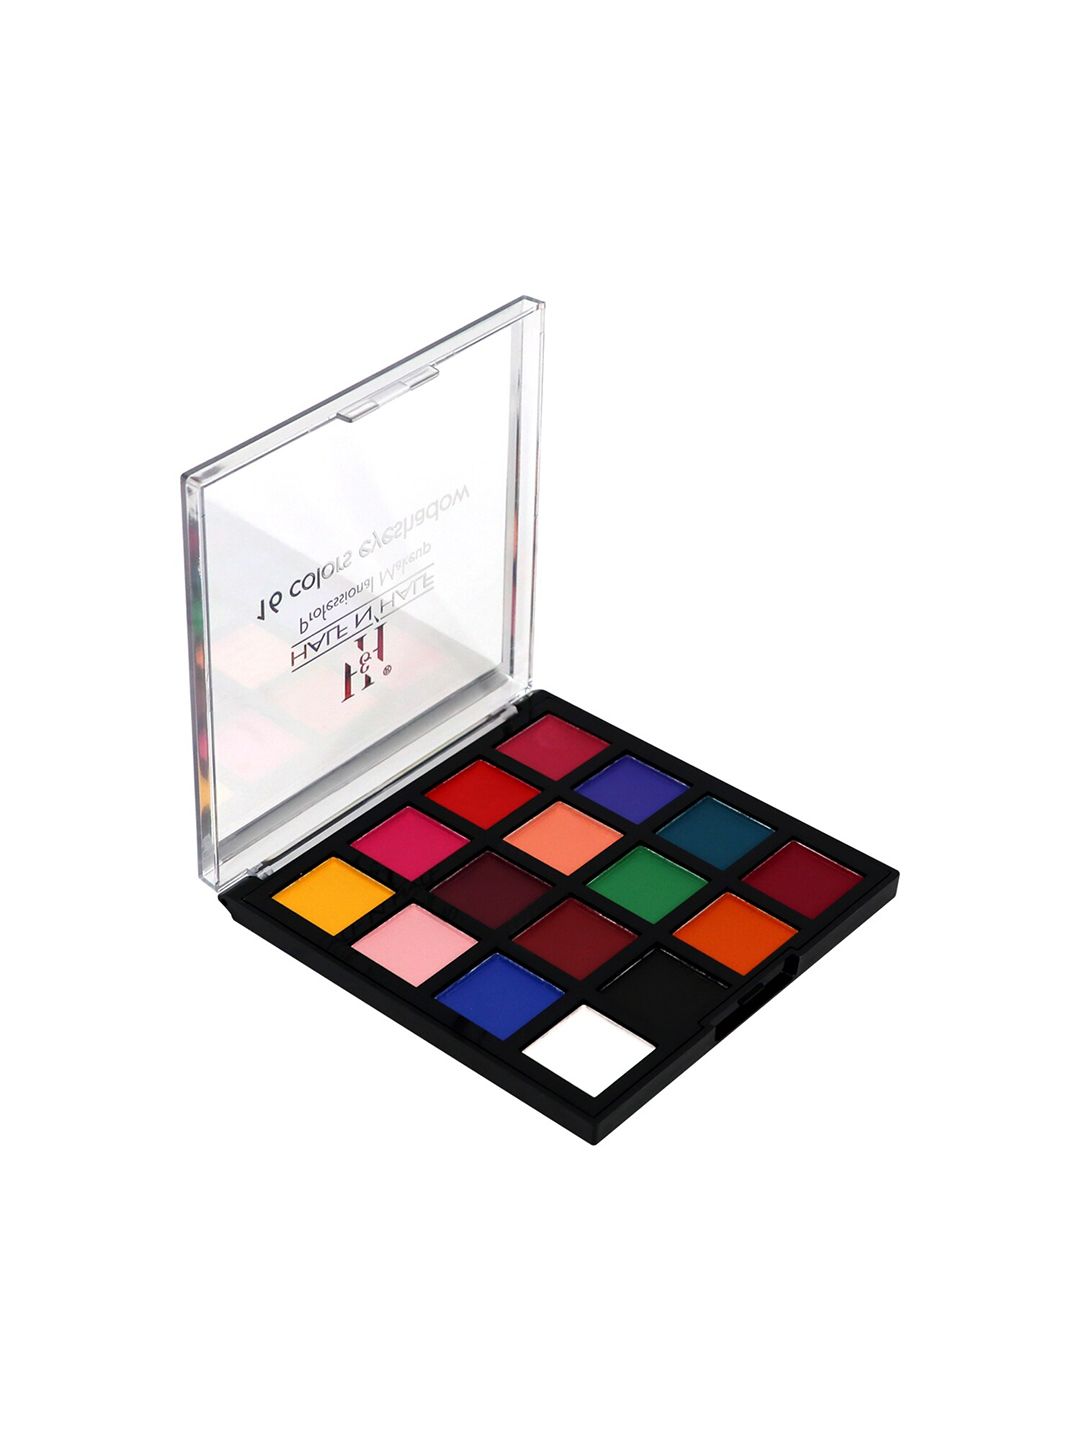 Half N Half Professional 16 Colors Matte Eyeshadow Palette - 01 Price in India